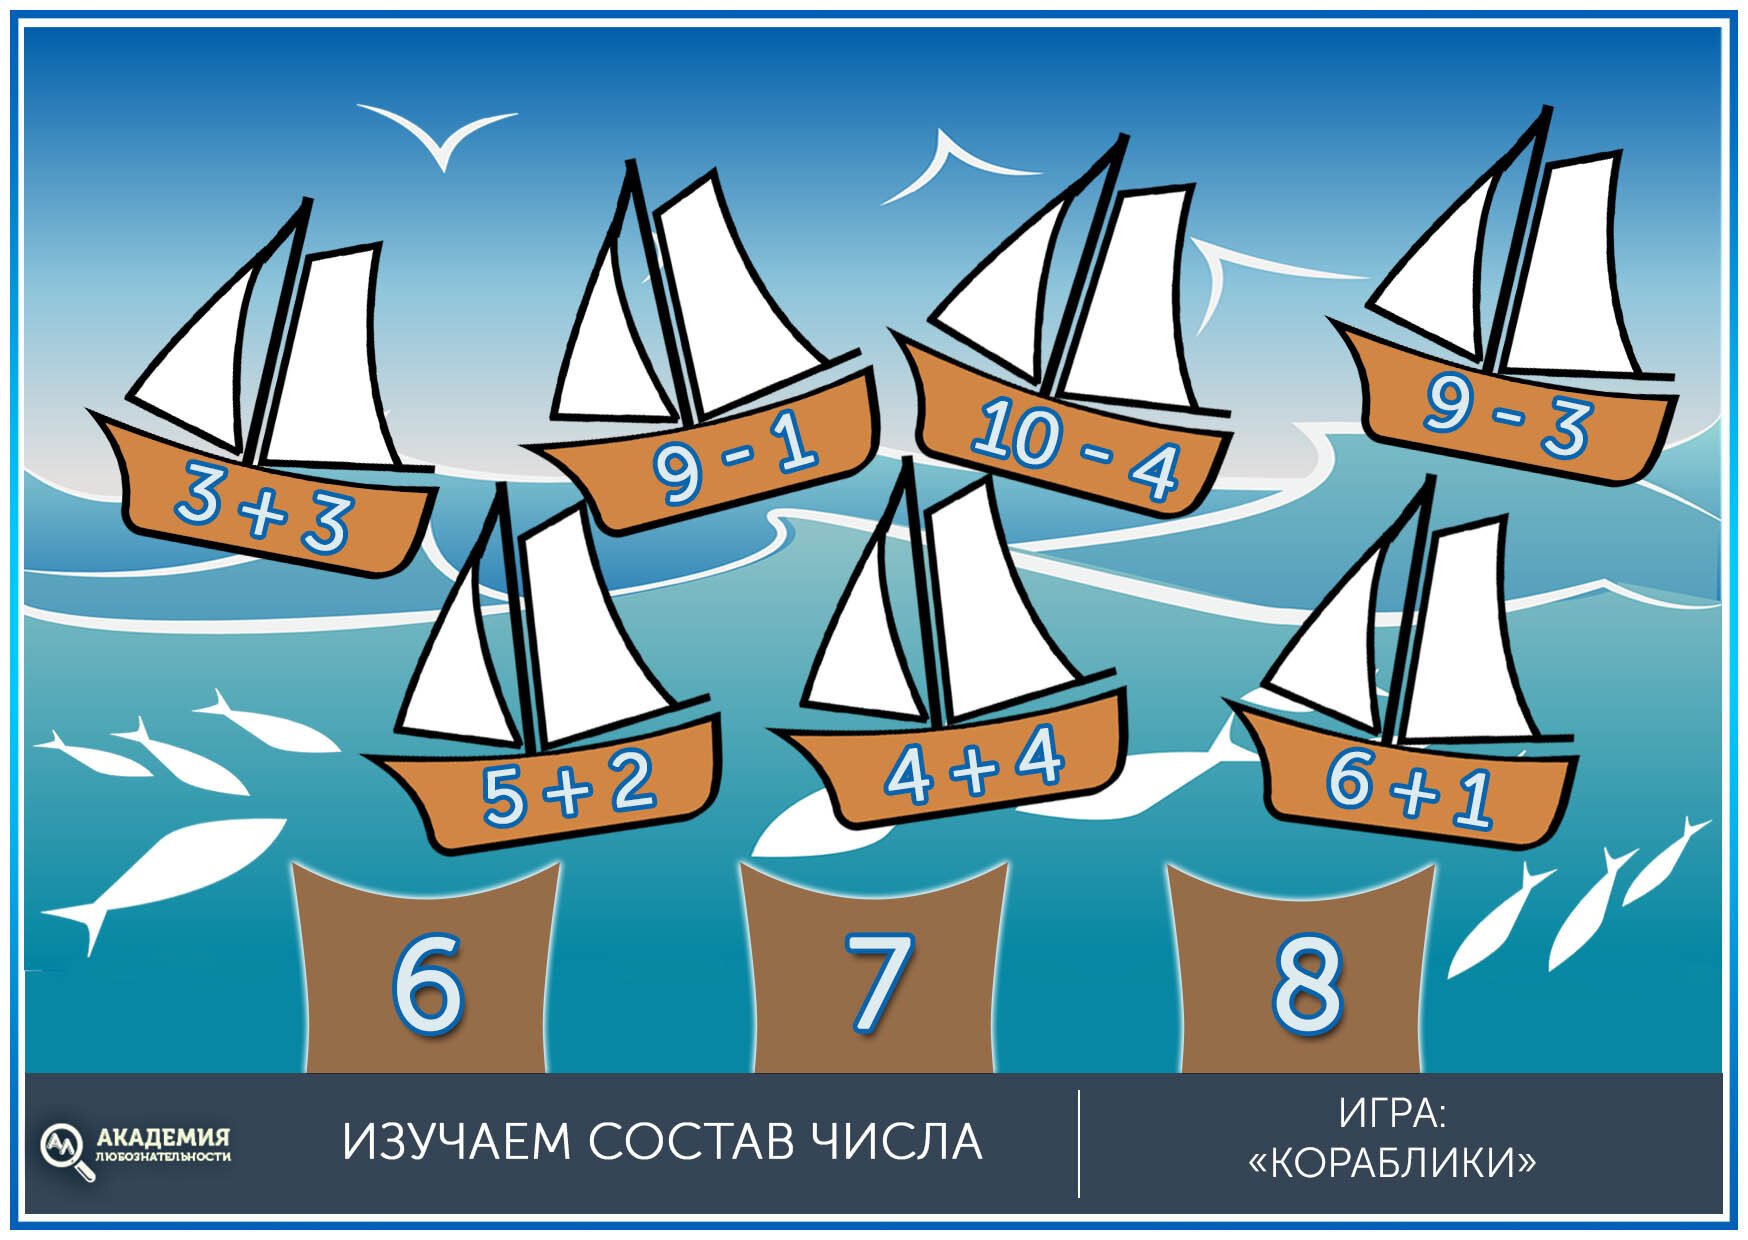 Состав числа игра для дошкольников кораблики